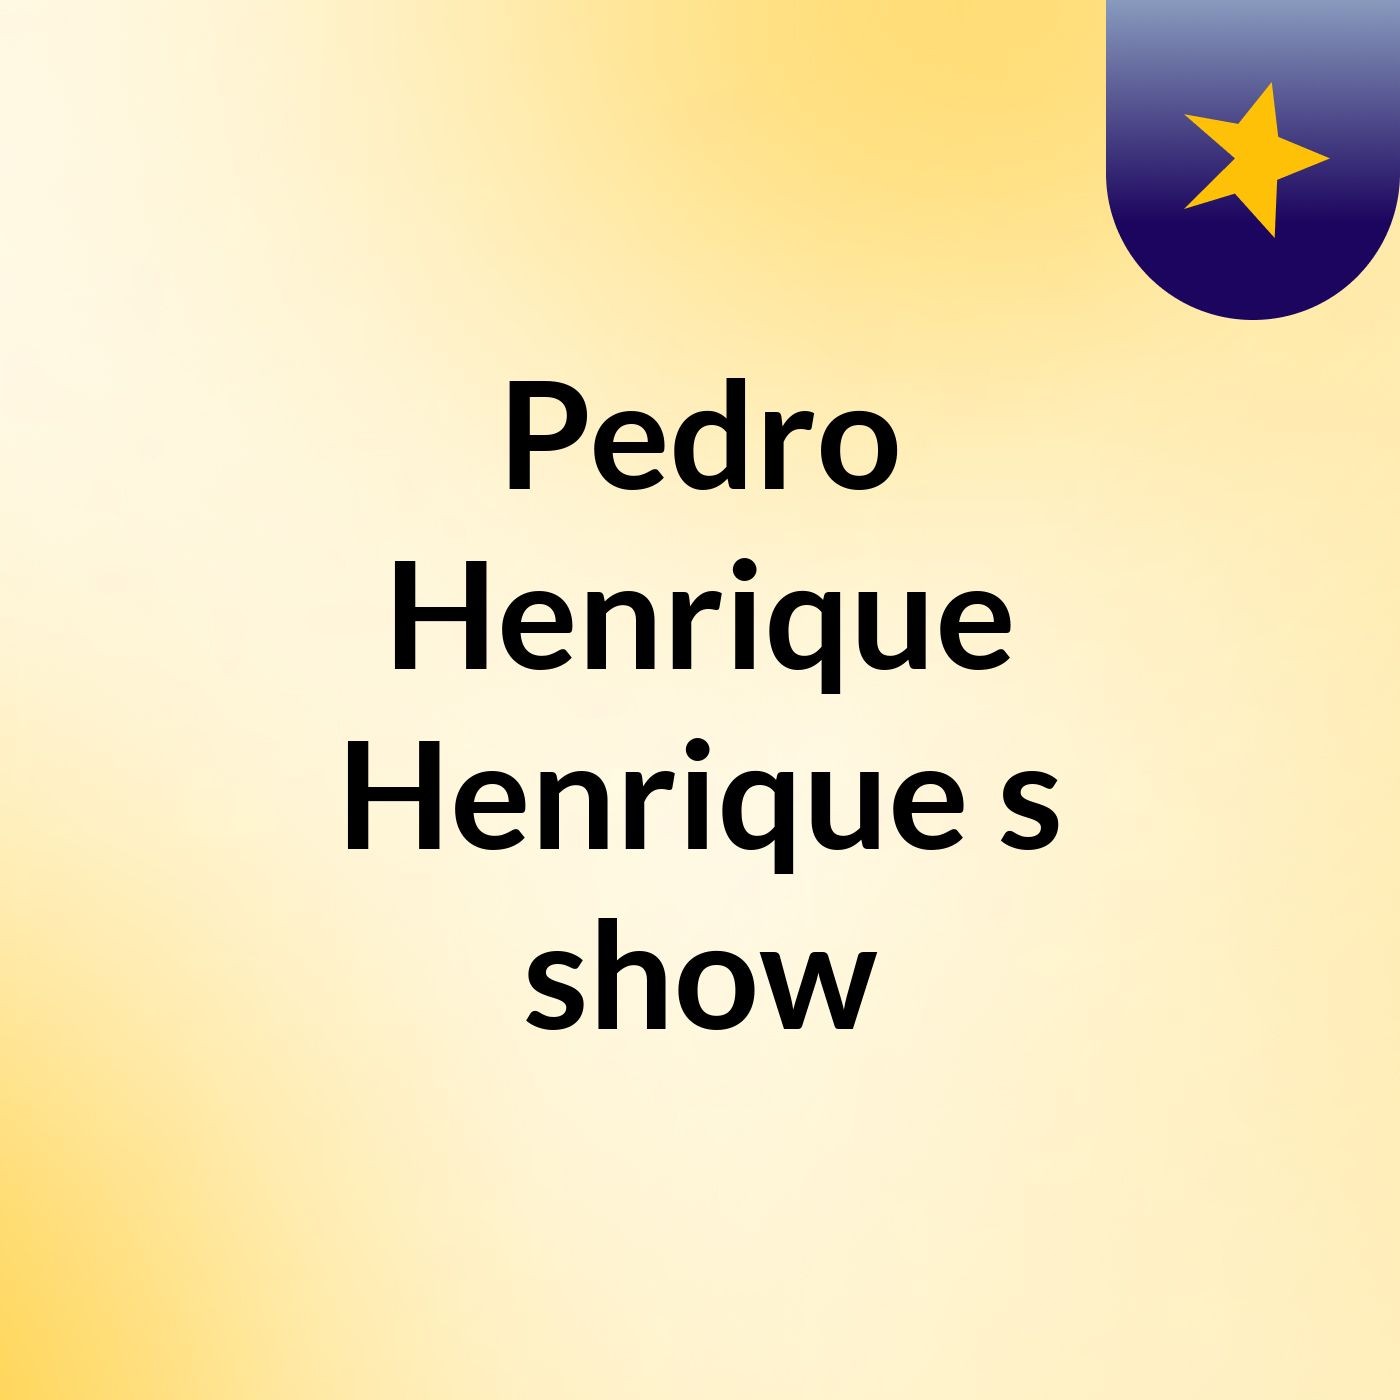 Pedro Henrique Henrique's show